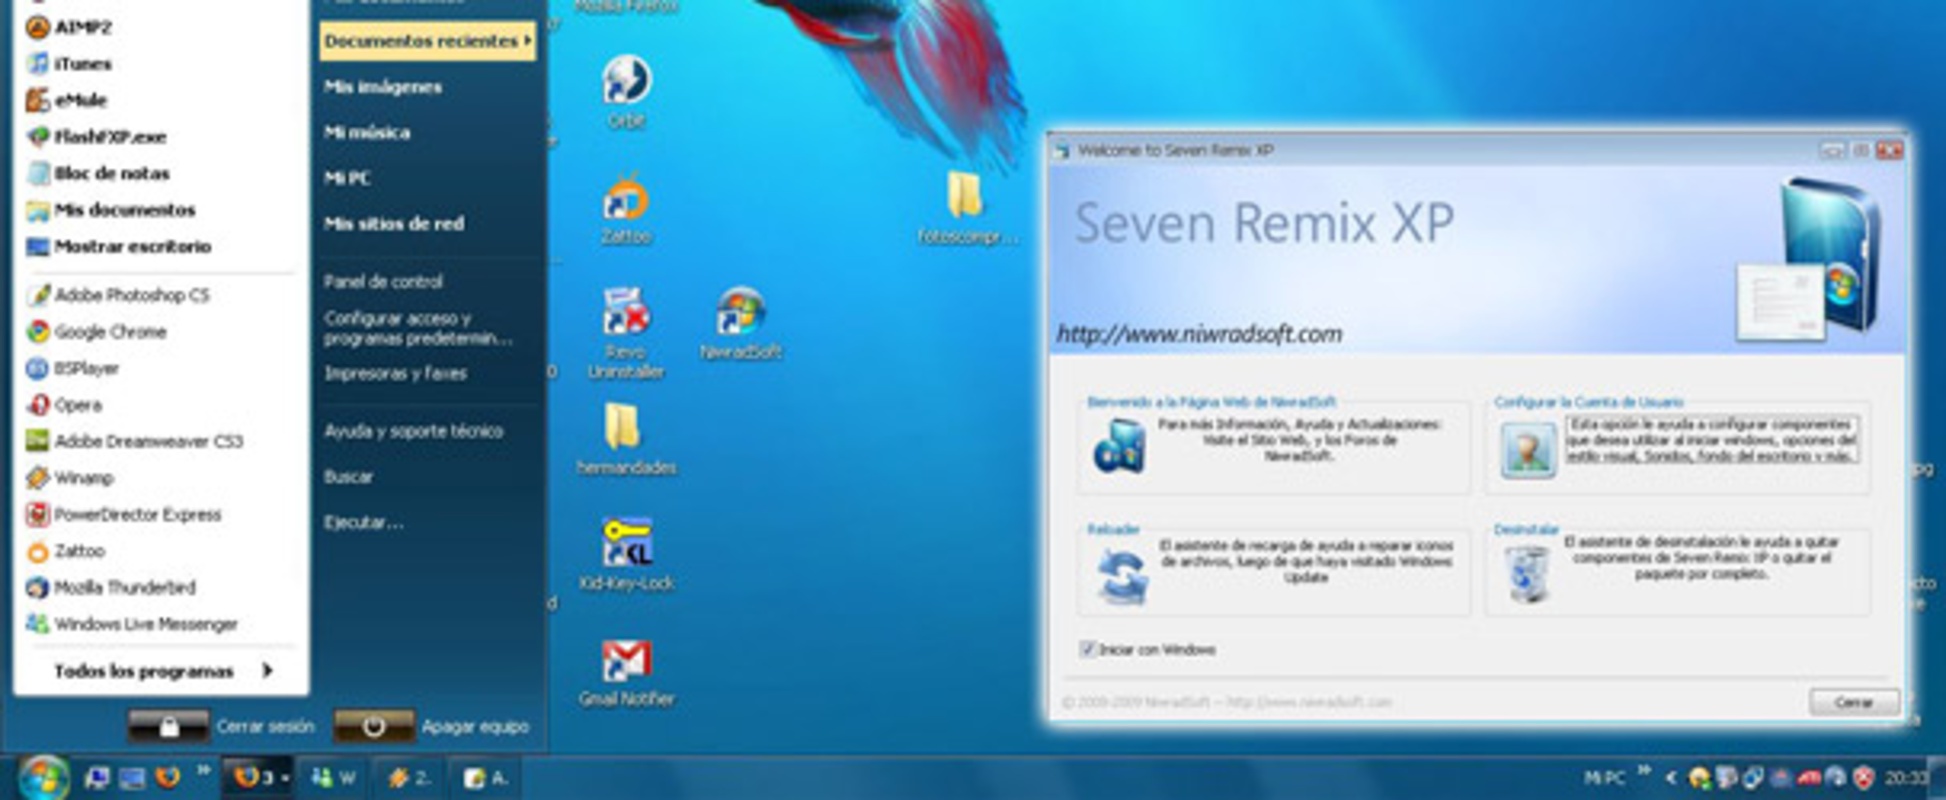 Seven Remix XP 2.31 feature